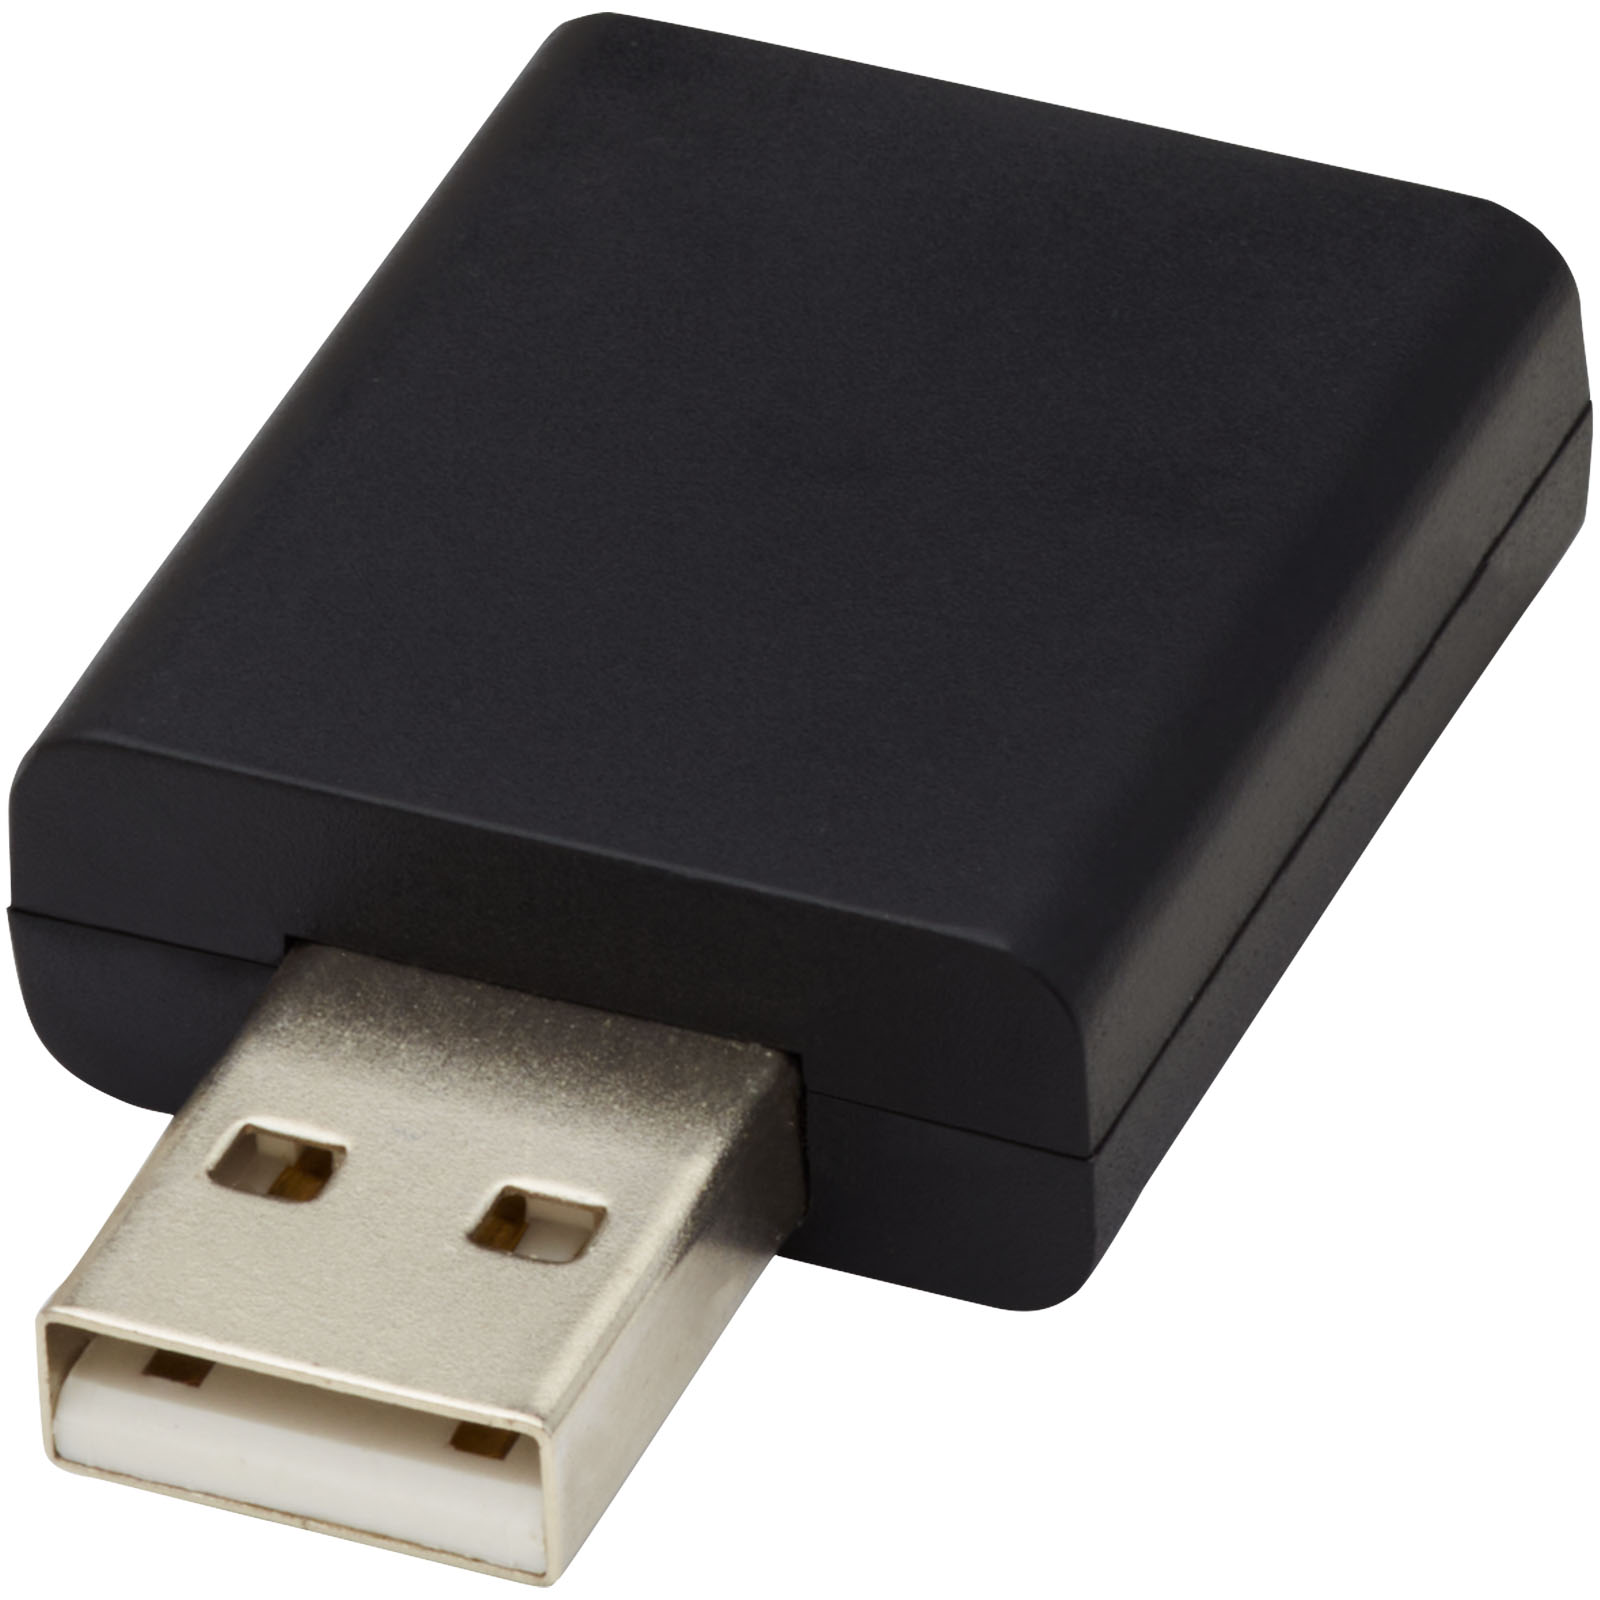 Computer Accessories - Incognito USB data blocker